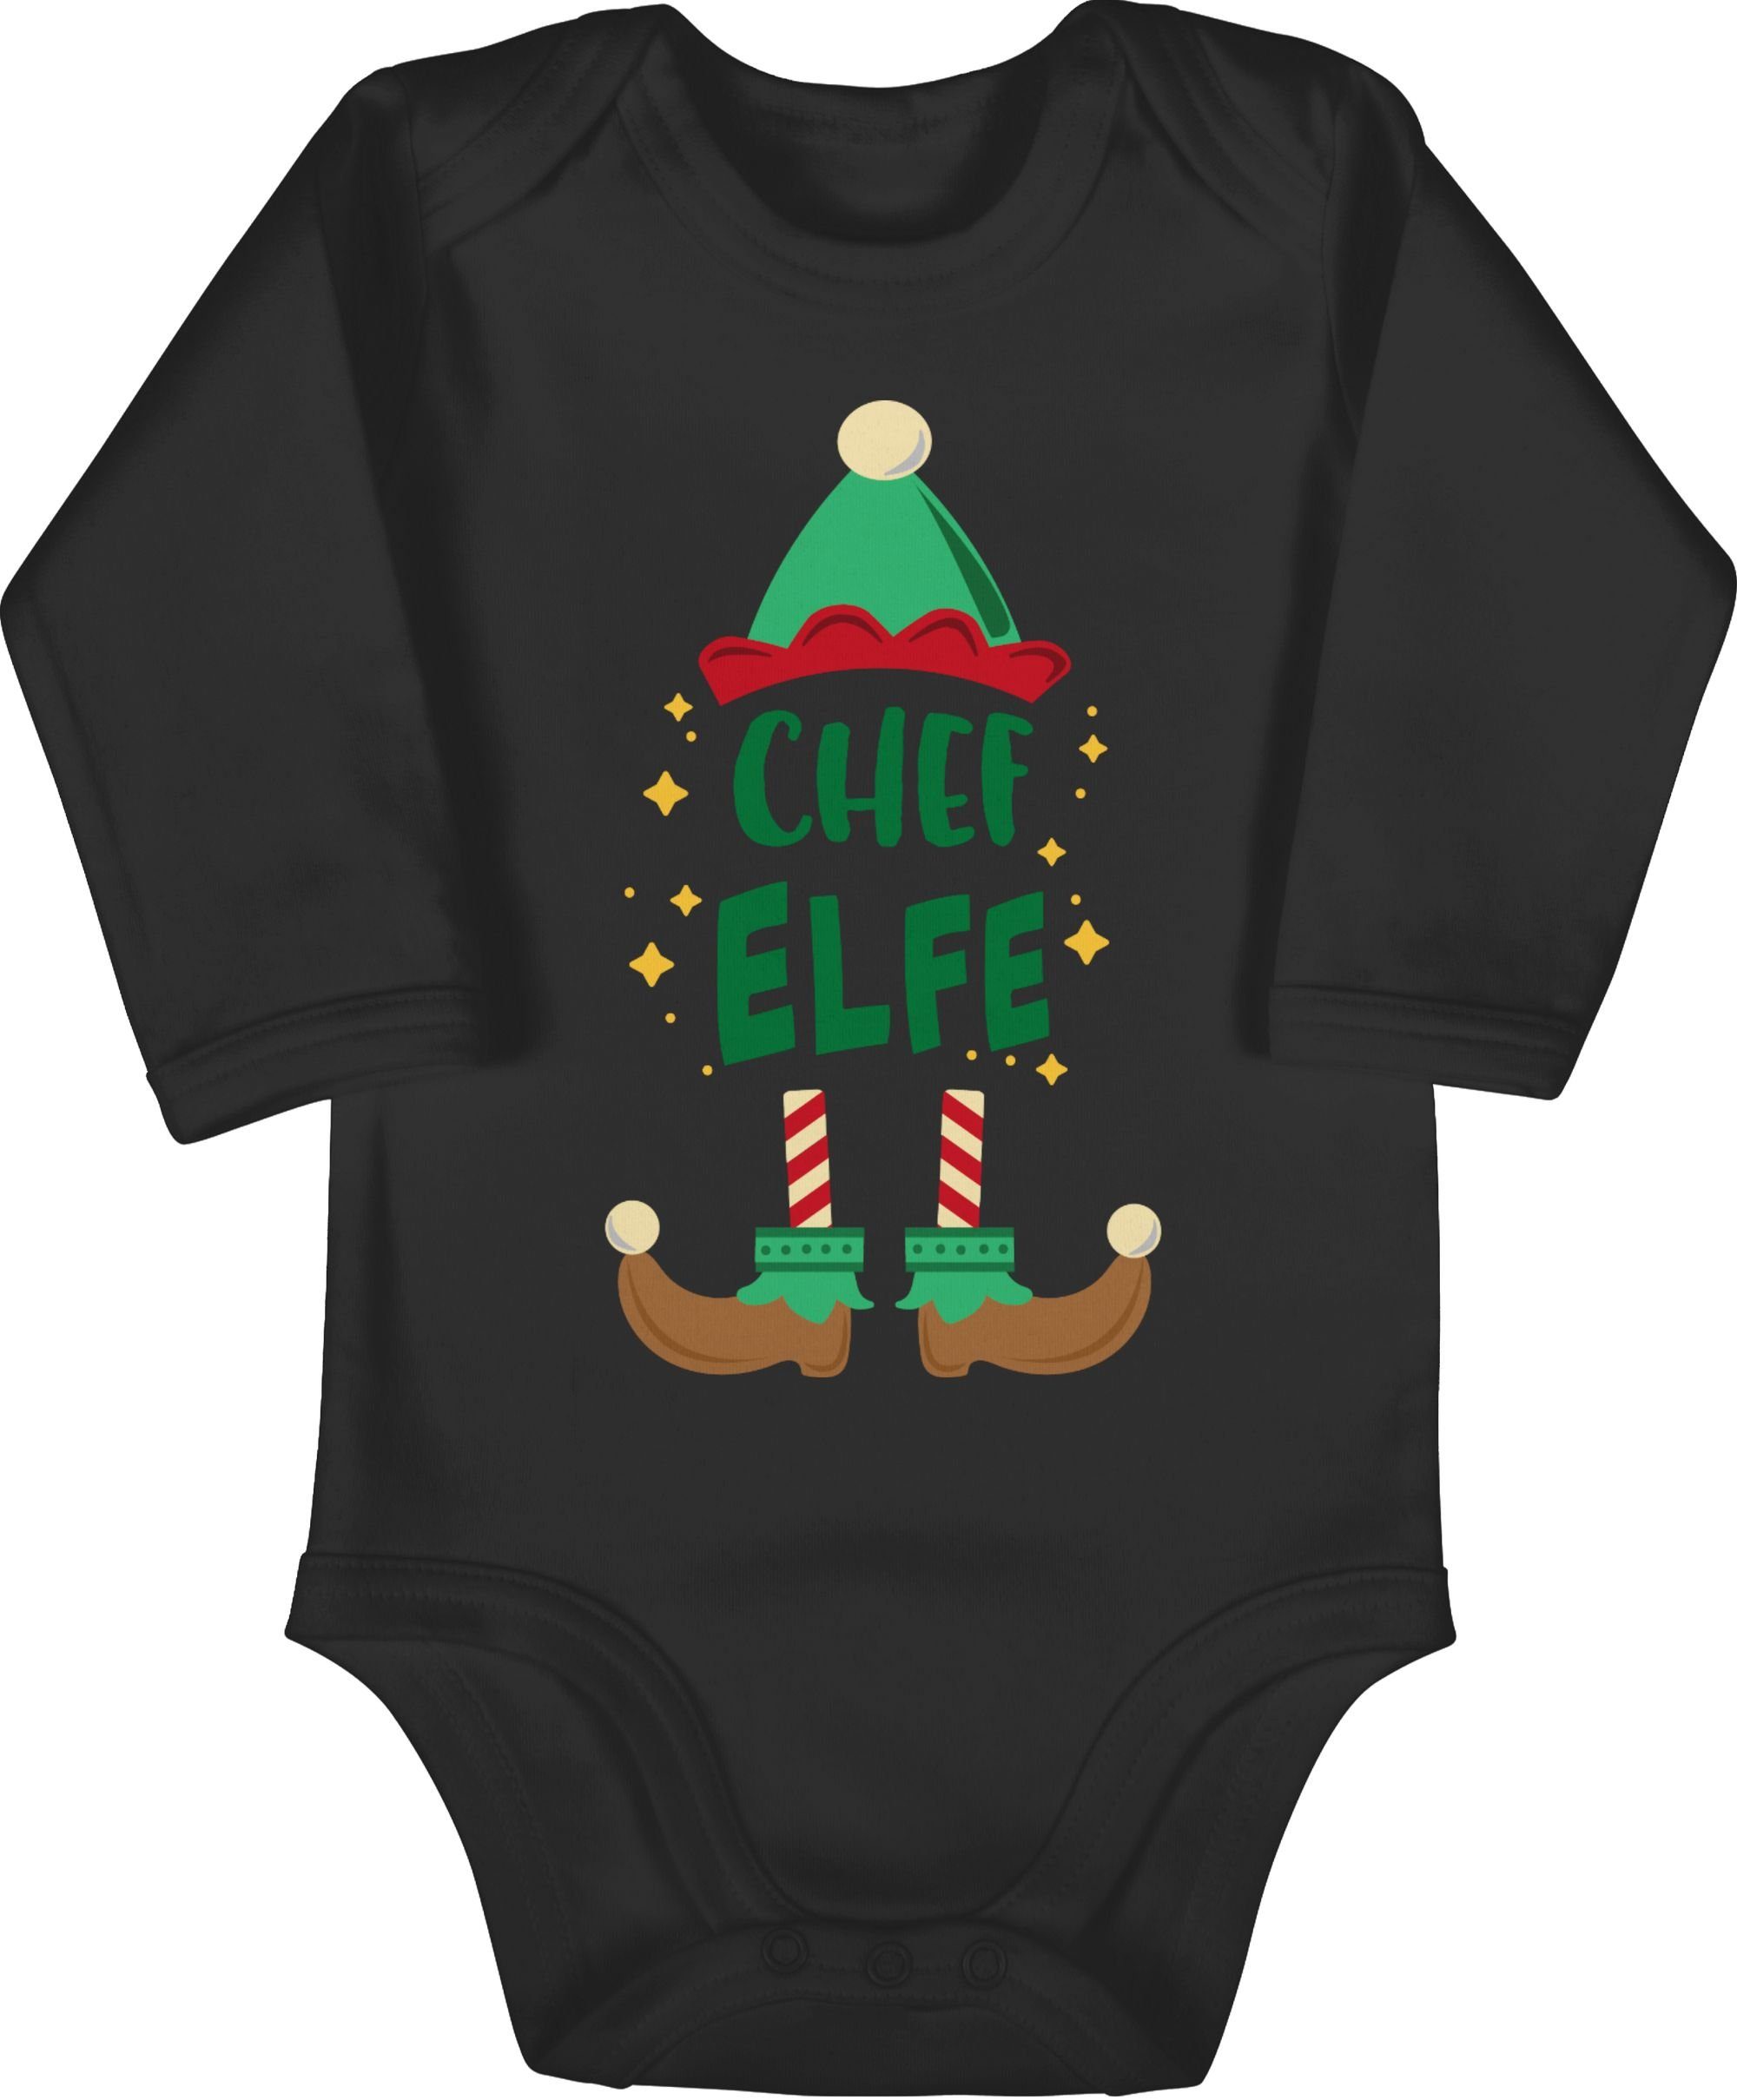 Kleidung Weihnachten Baby Elfe Shirtbody Shirtracer Schwarz Chef 1 Weihnachten